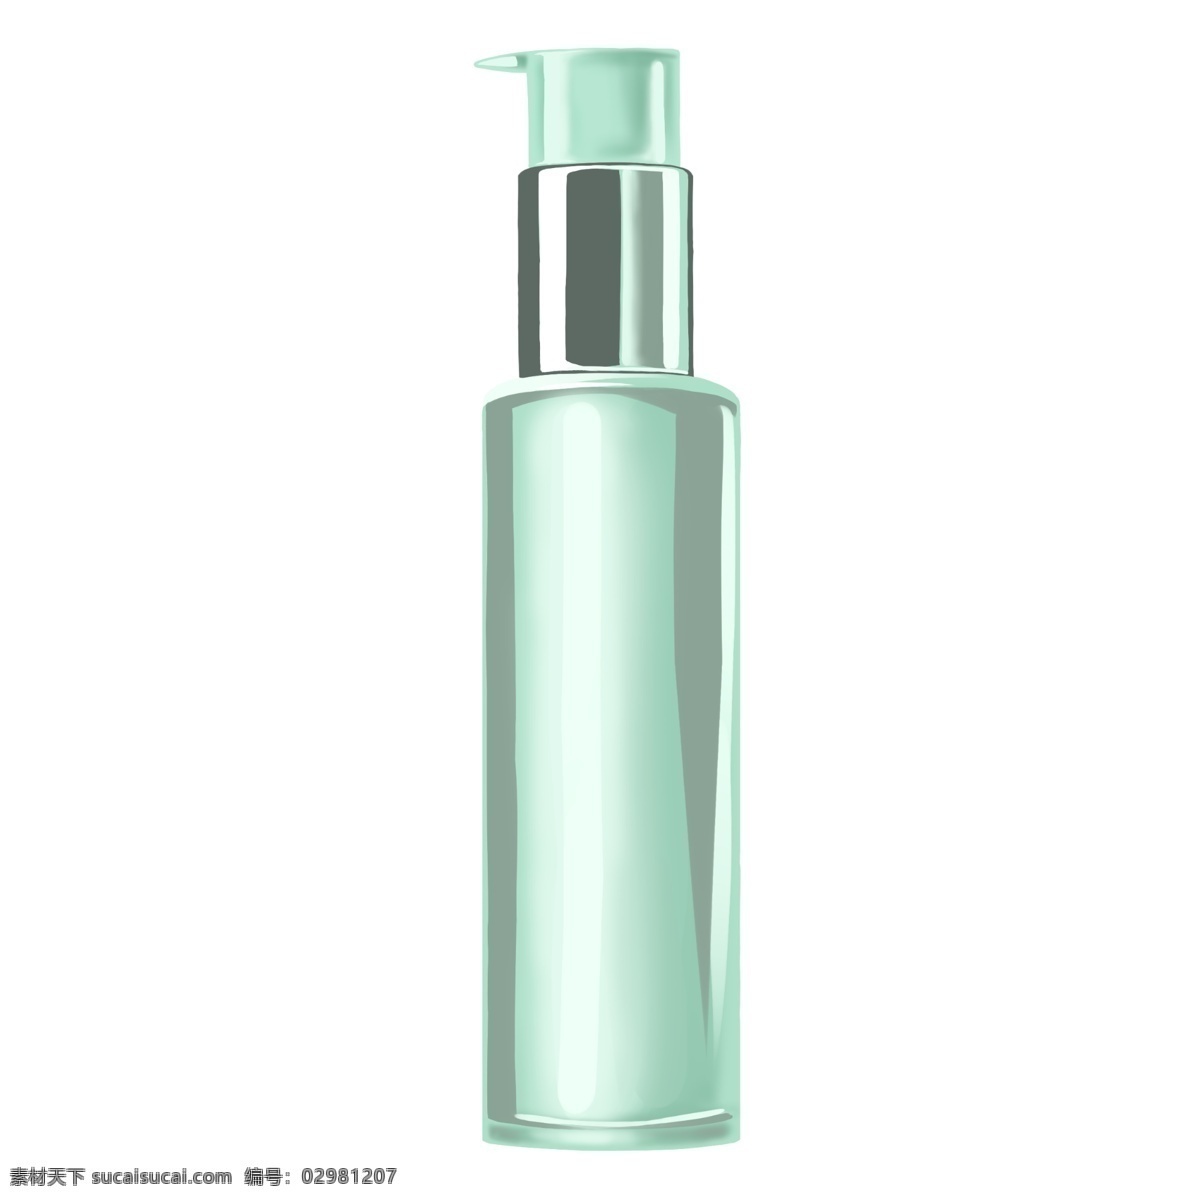 绿色 化妆品 瓶子 插画 绿色瓶子 女性护肤品 保养皮肤 卡通乳液 高档护肤品 护肤品 美妆用品